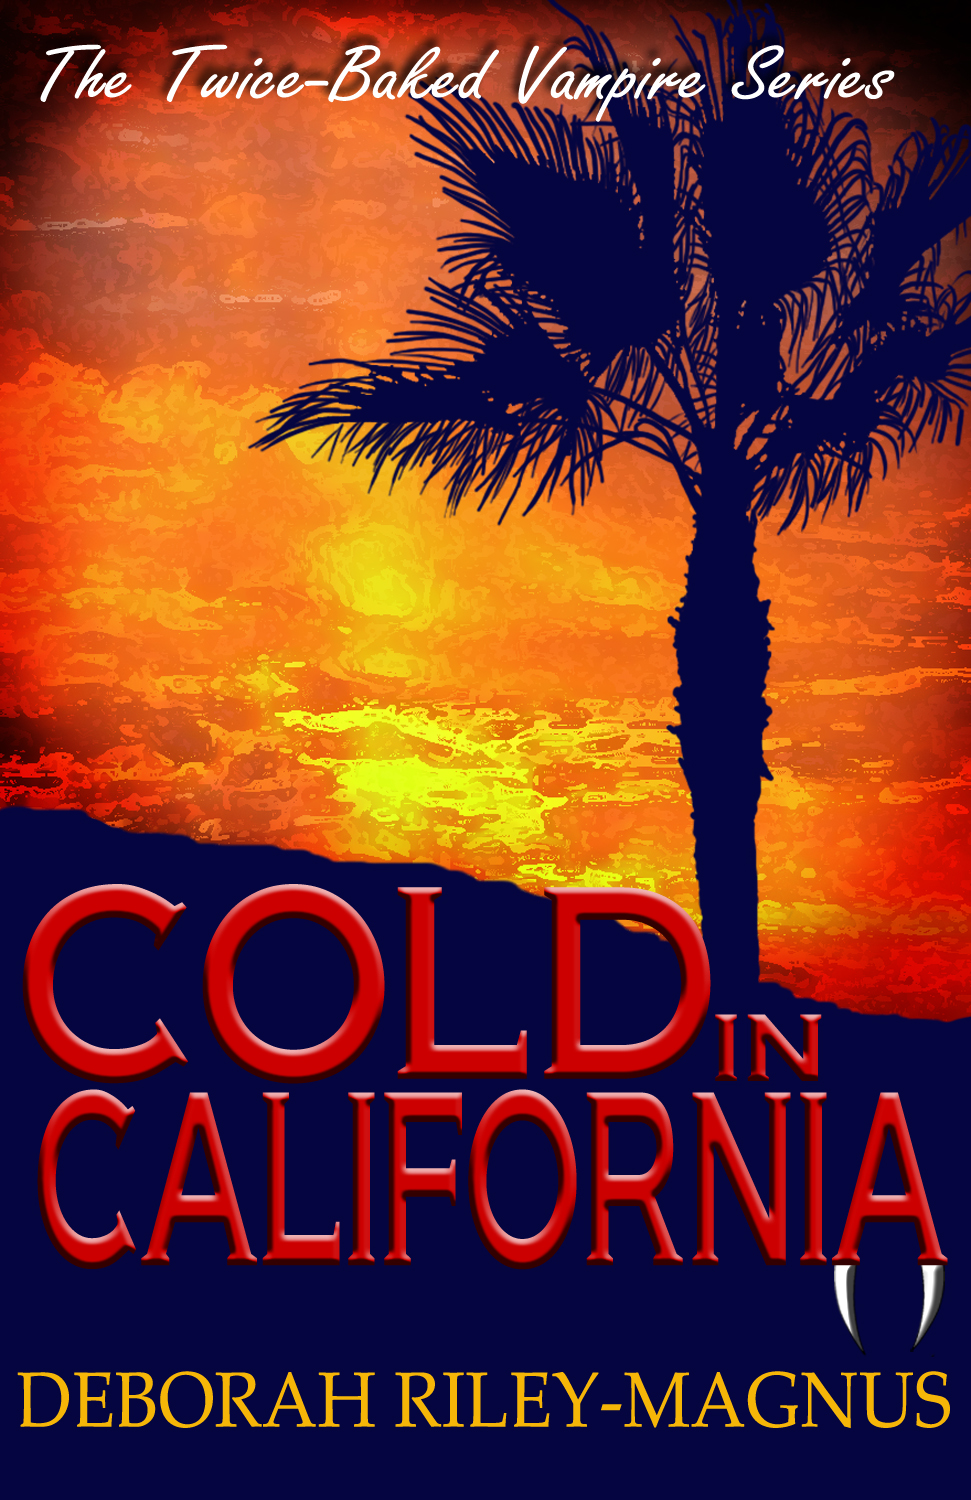 Cold in California